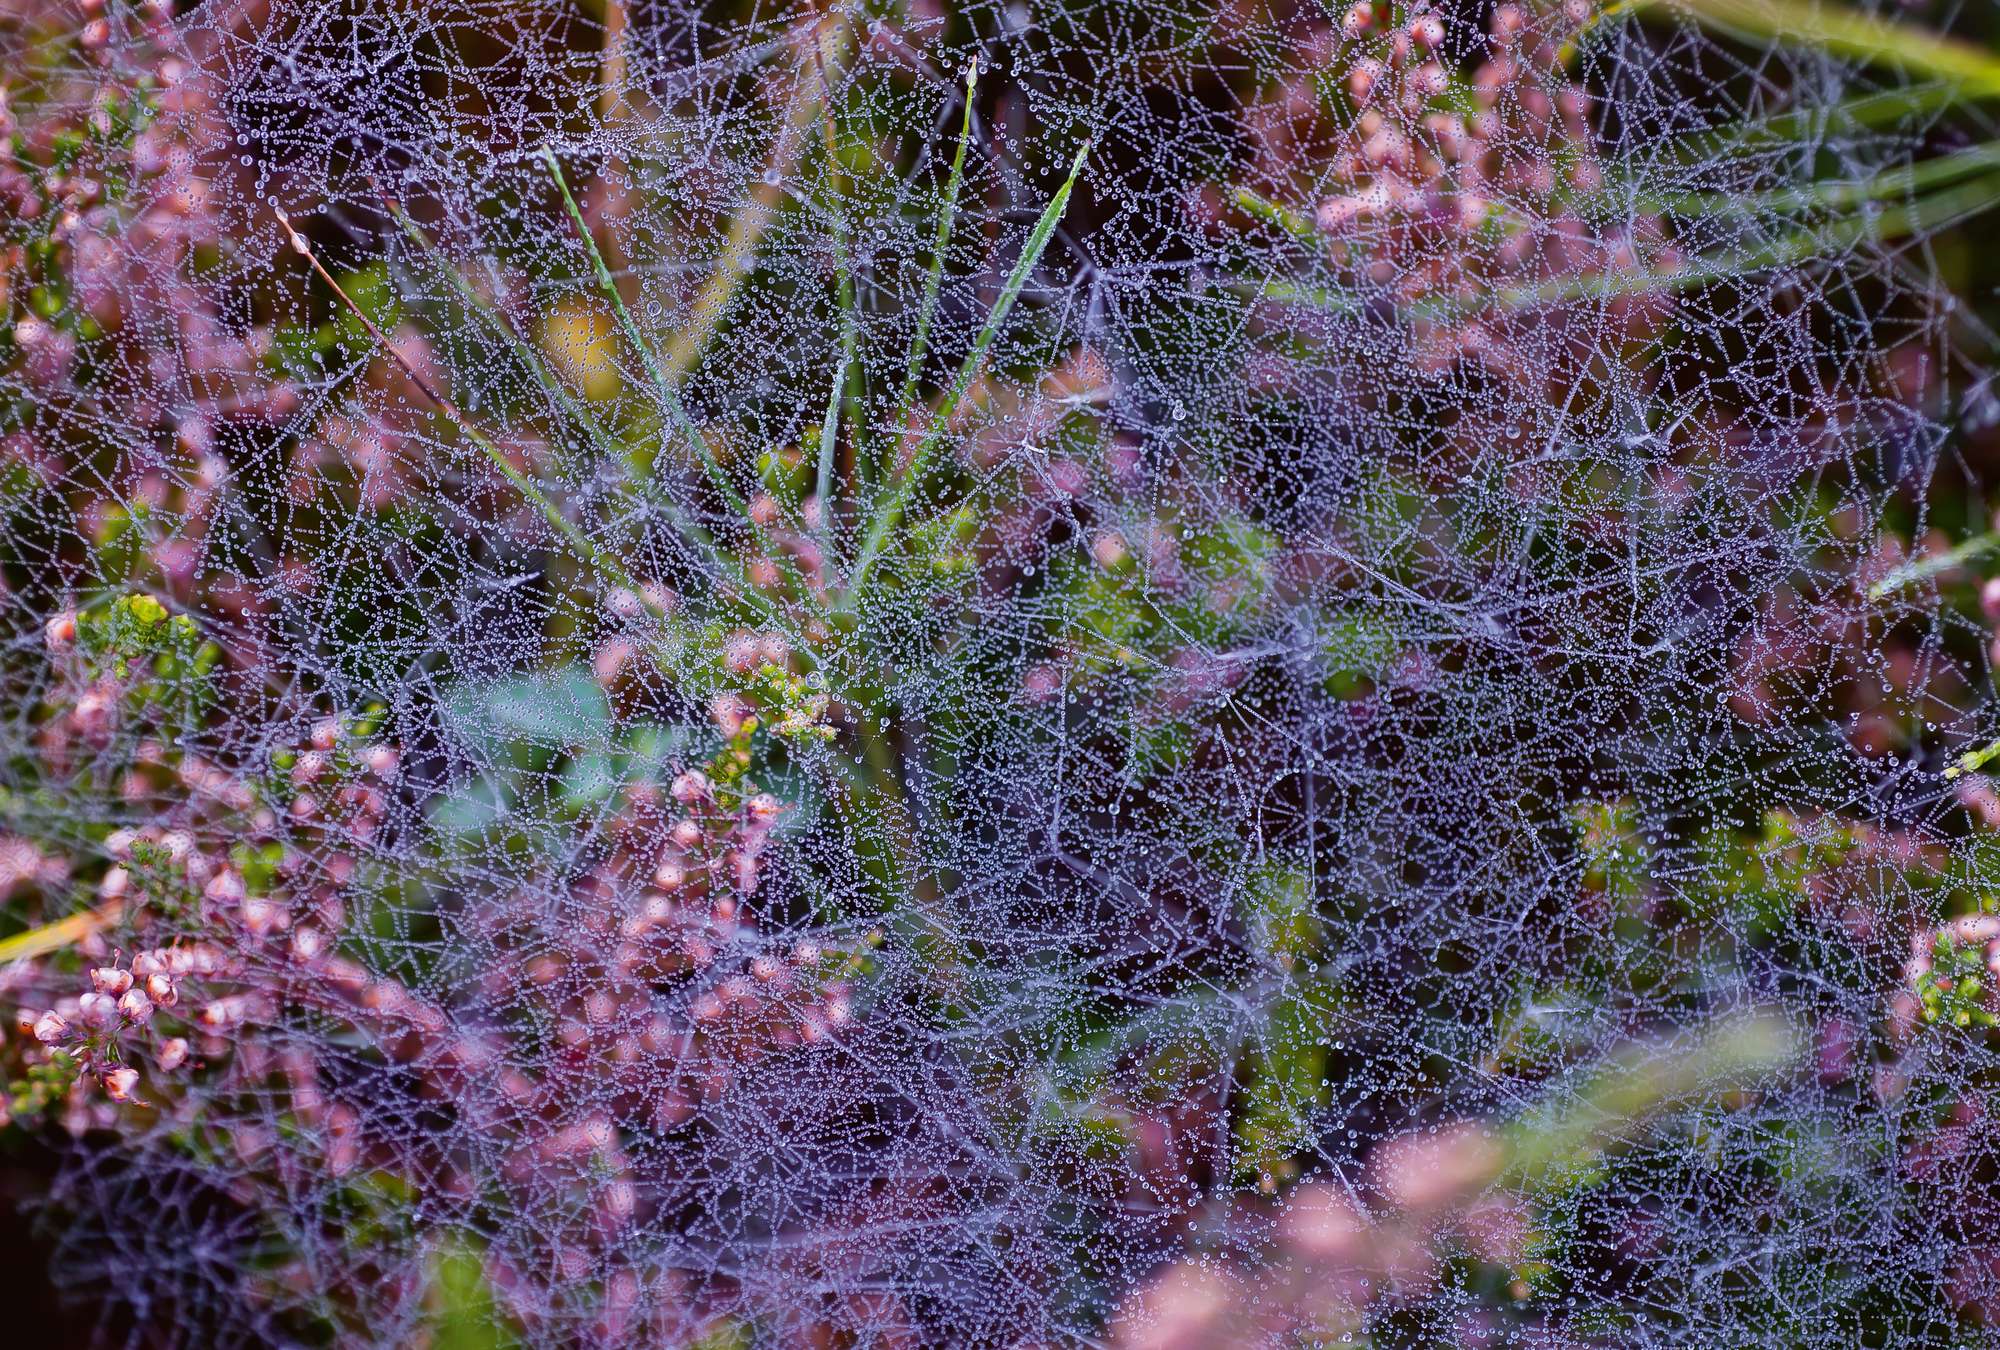             Rocío matutino - papel pintado de telas de araña bajo el sol
        